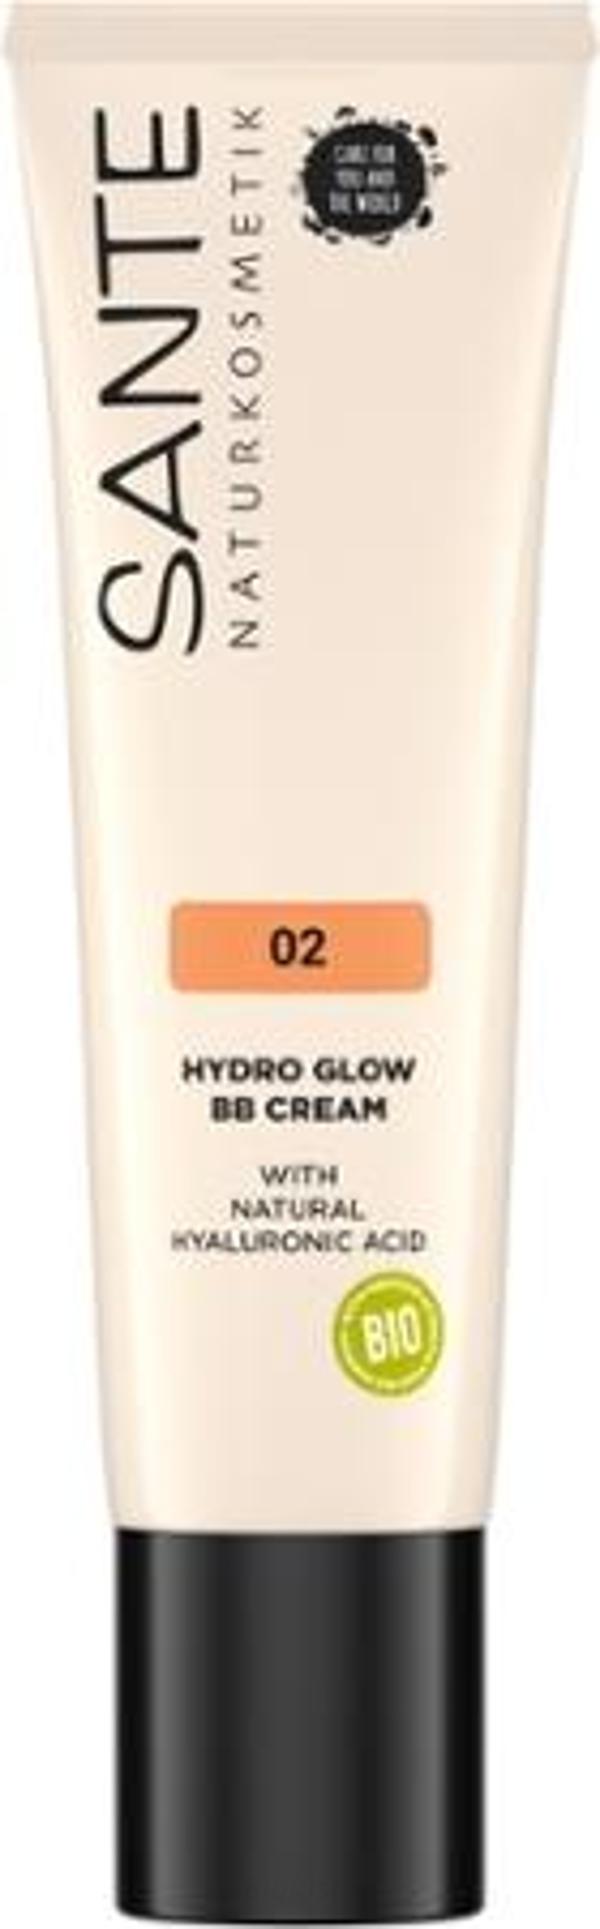 Produktfoto zu Hydro Glow BB Cream 02